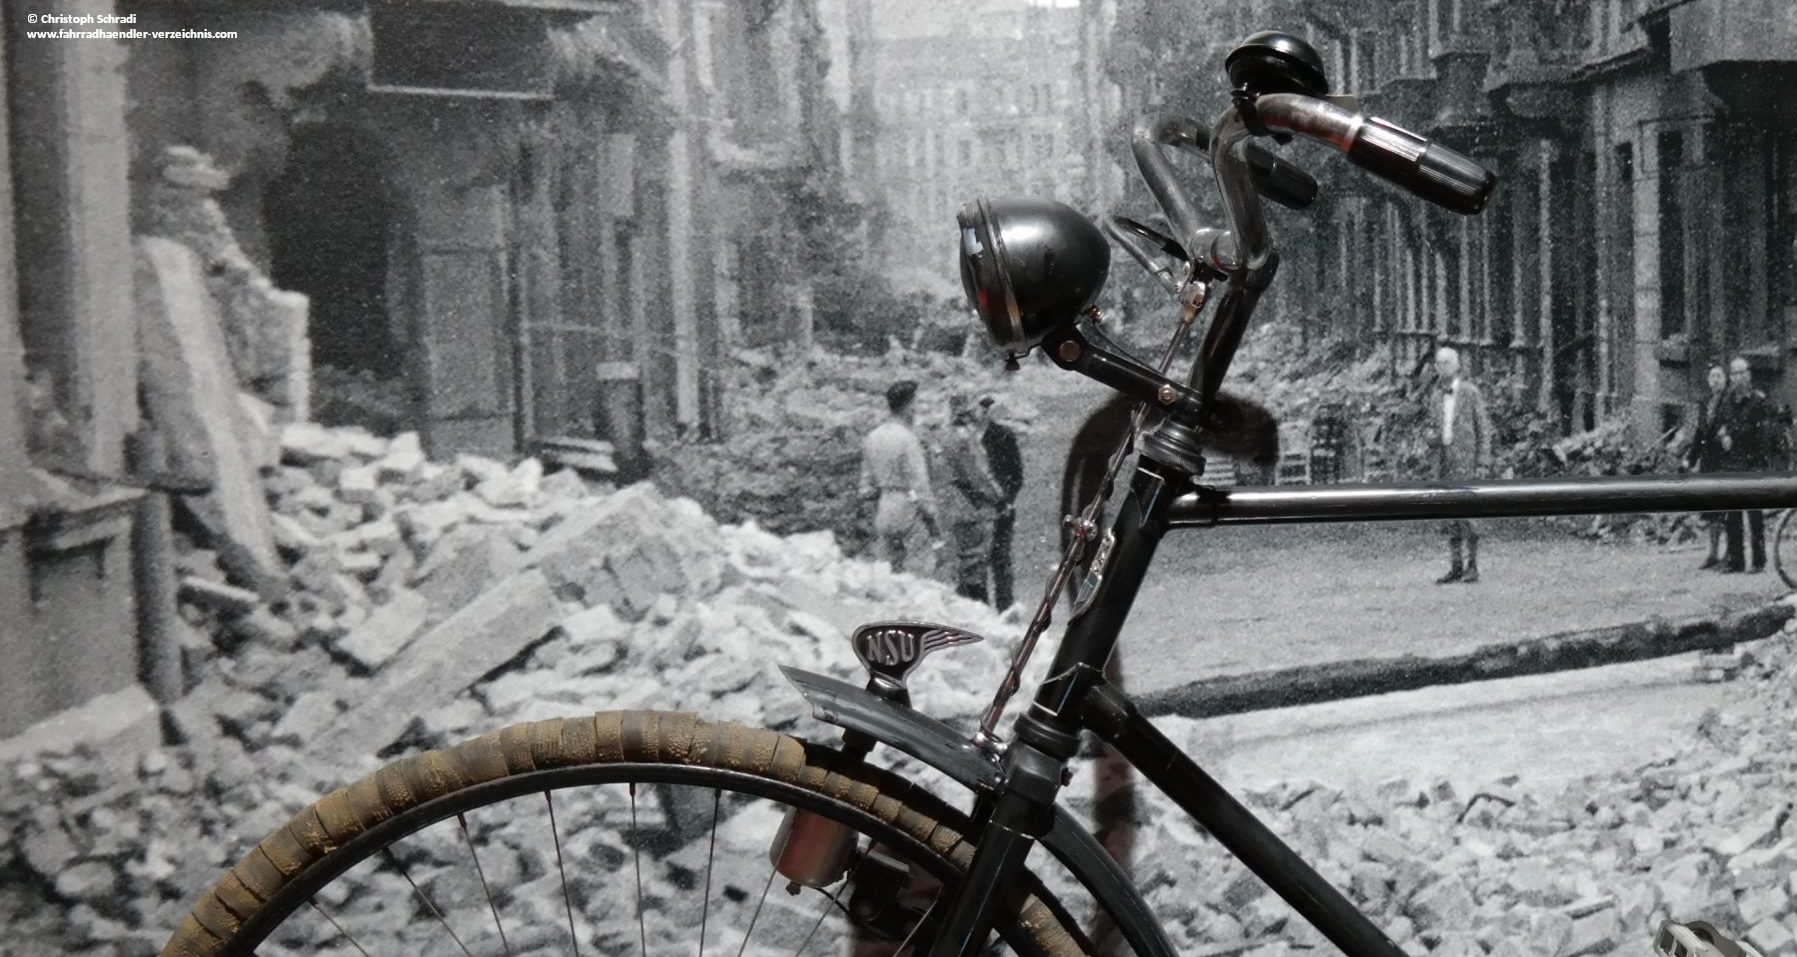 Die Not im und nach Weltkriegen macht erfinderisch - hier ein Fahrrad nach dem ersten Weltkrieg mit Notbereifung